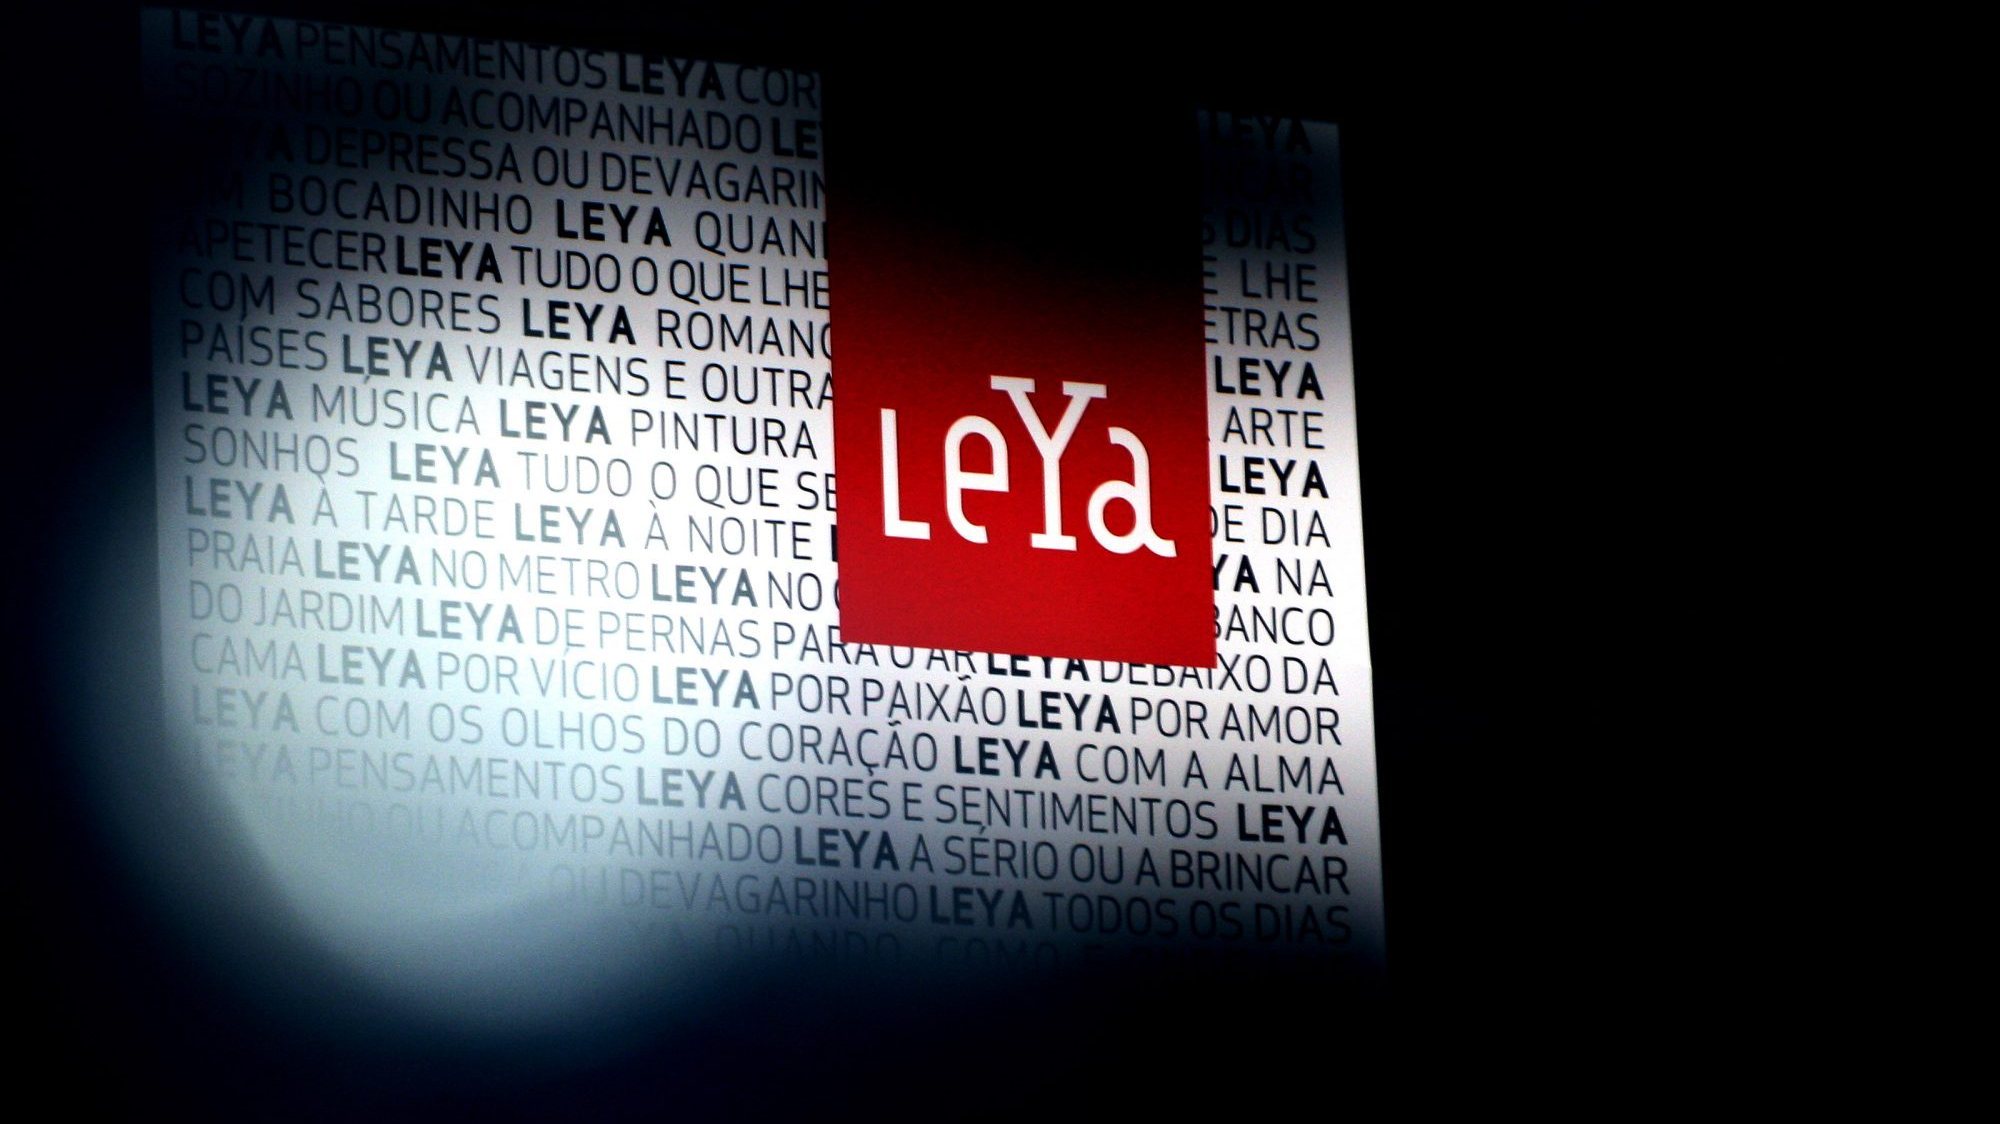 Novo grupo editorial LEYA, formado pelas editoras ASA, Caminho, Dom Quixote, Gailivro, Novagaia e Texto, realizado esta tarde 07 de janeiro de 2007, no Centro de Congressos do Estoril. INACIO ROSA/LUSA